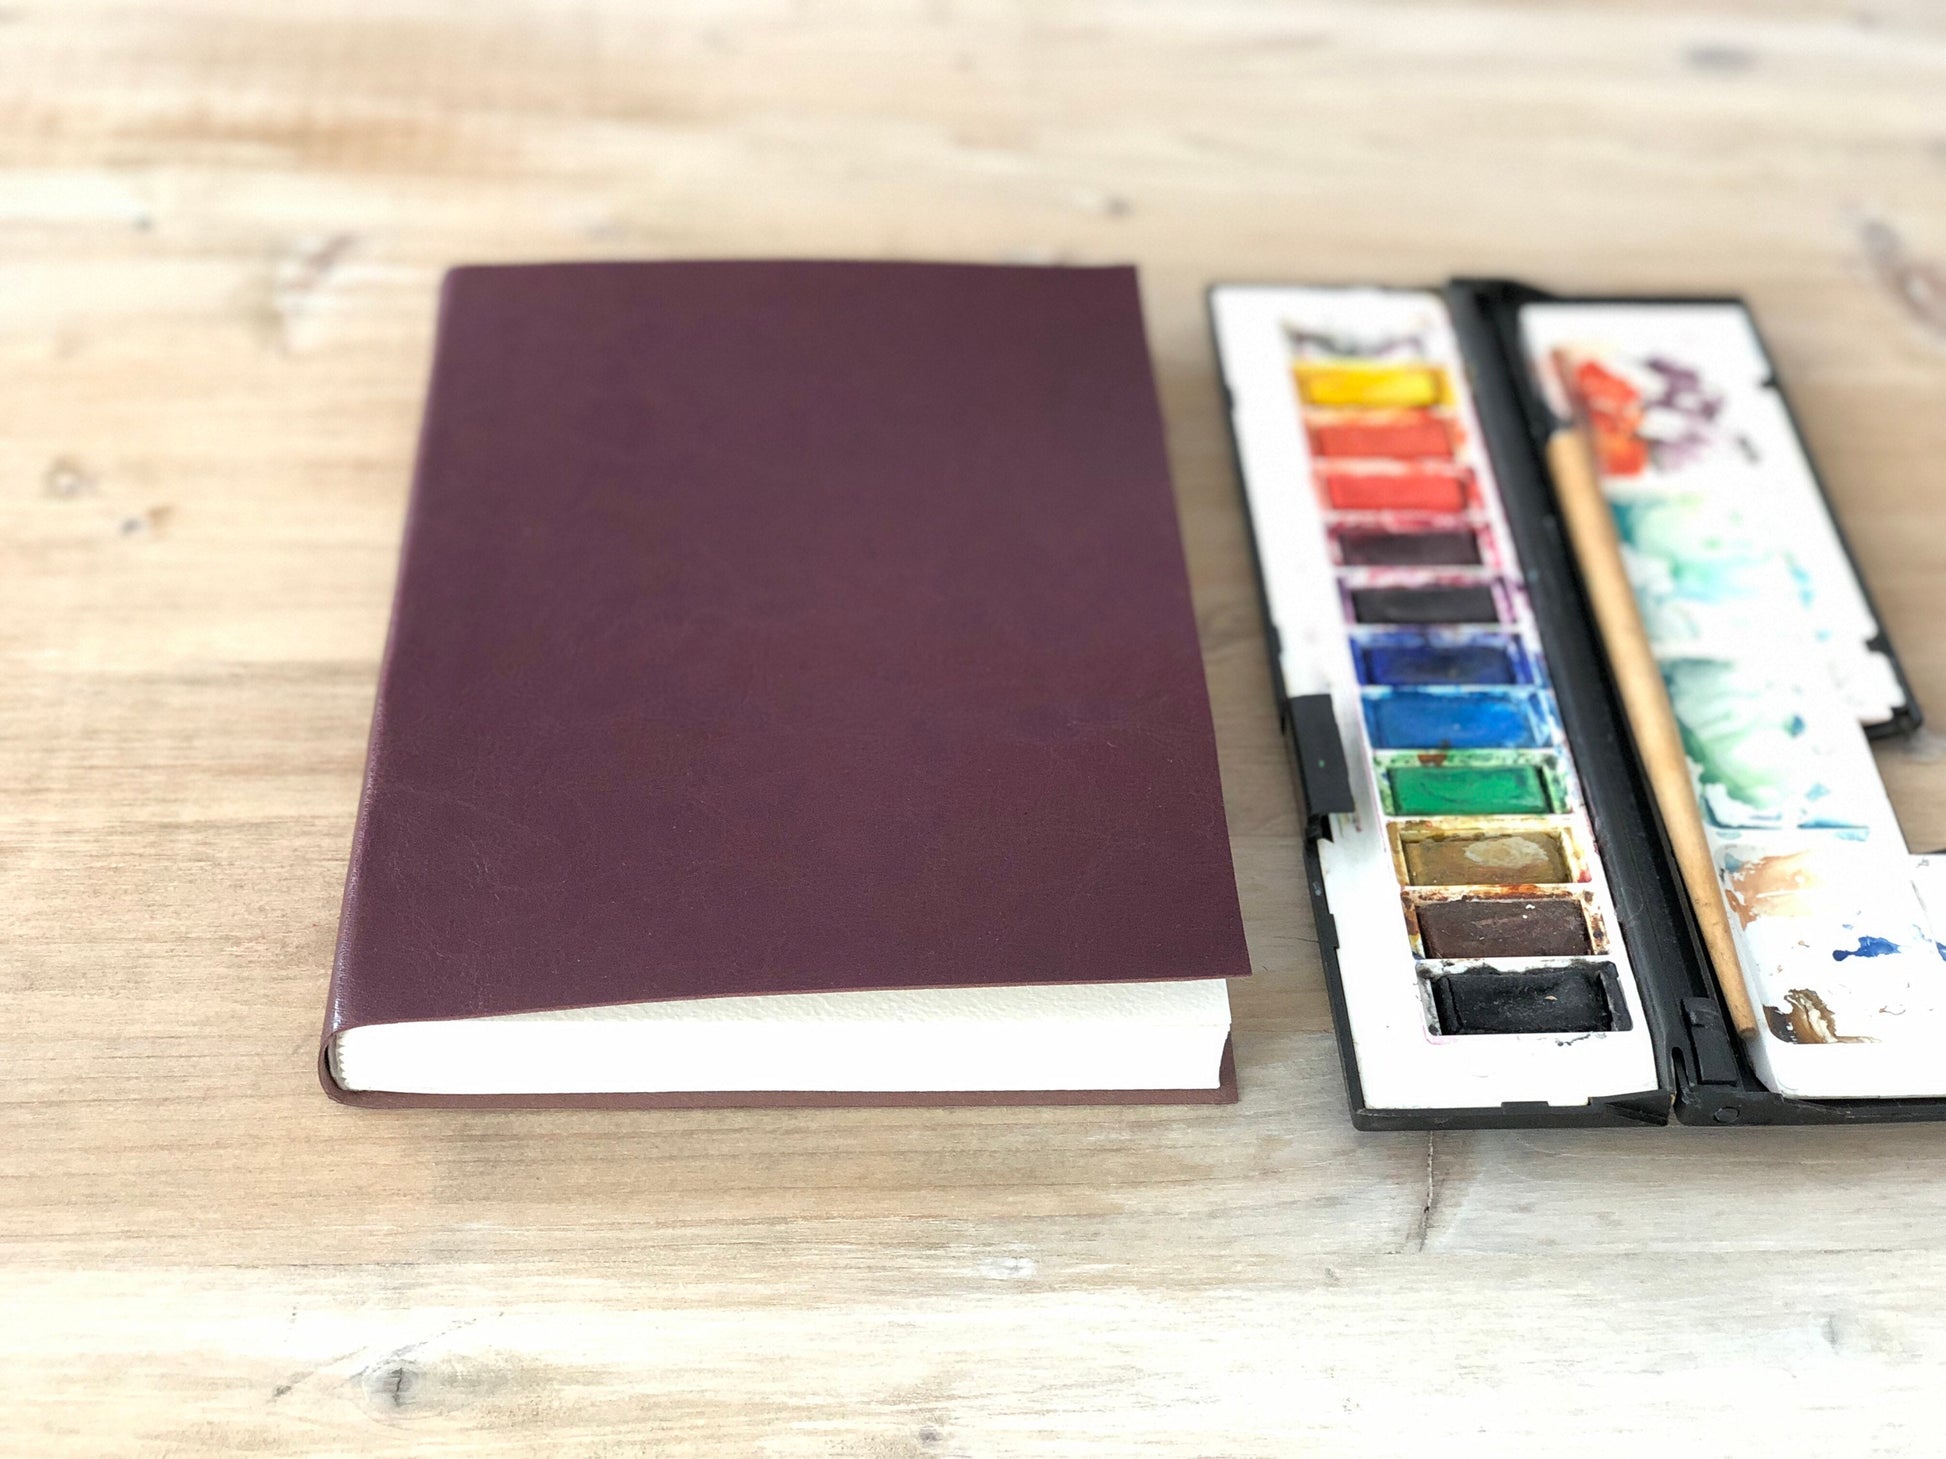 Burgundy Sketchbook I Watercolor Leather Art Journal I 